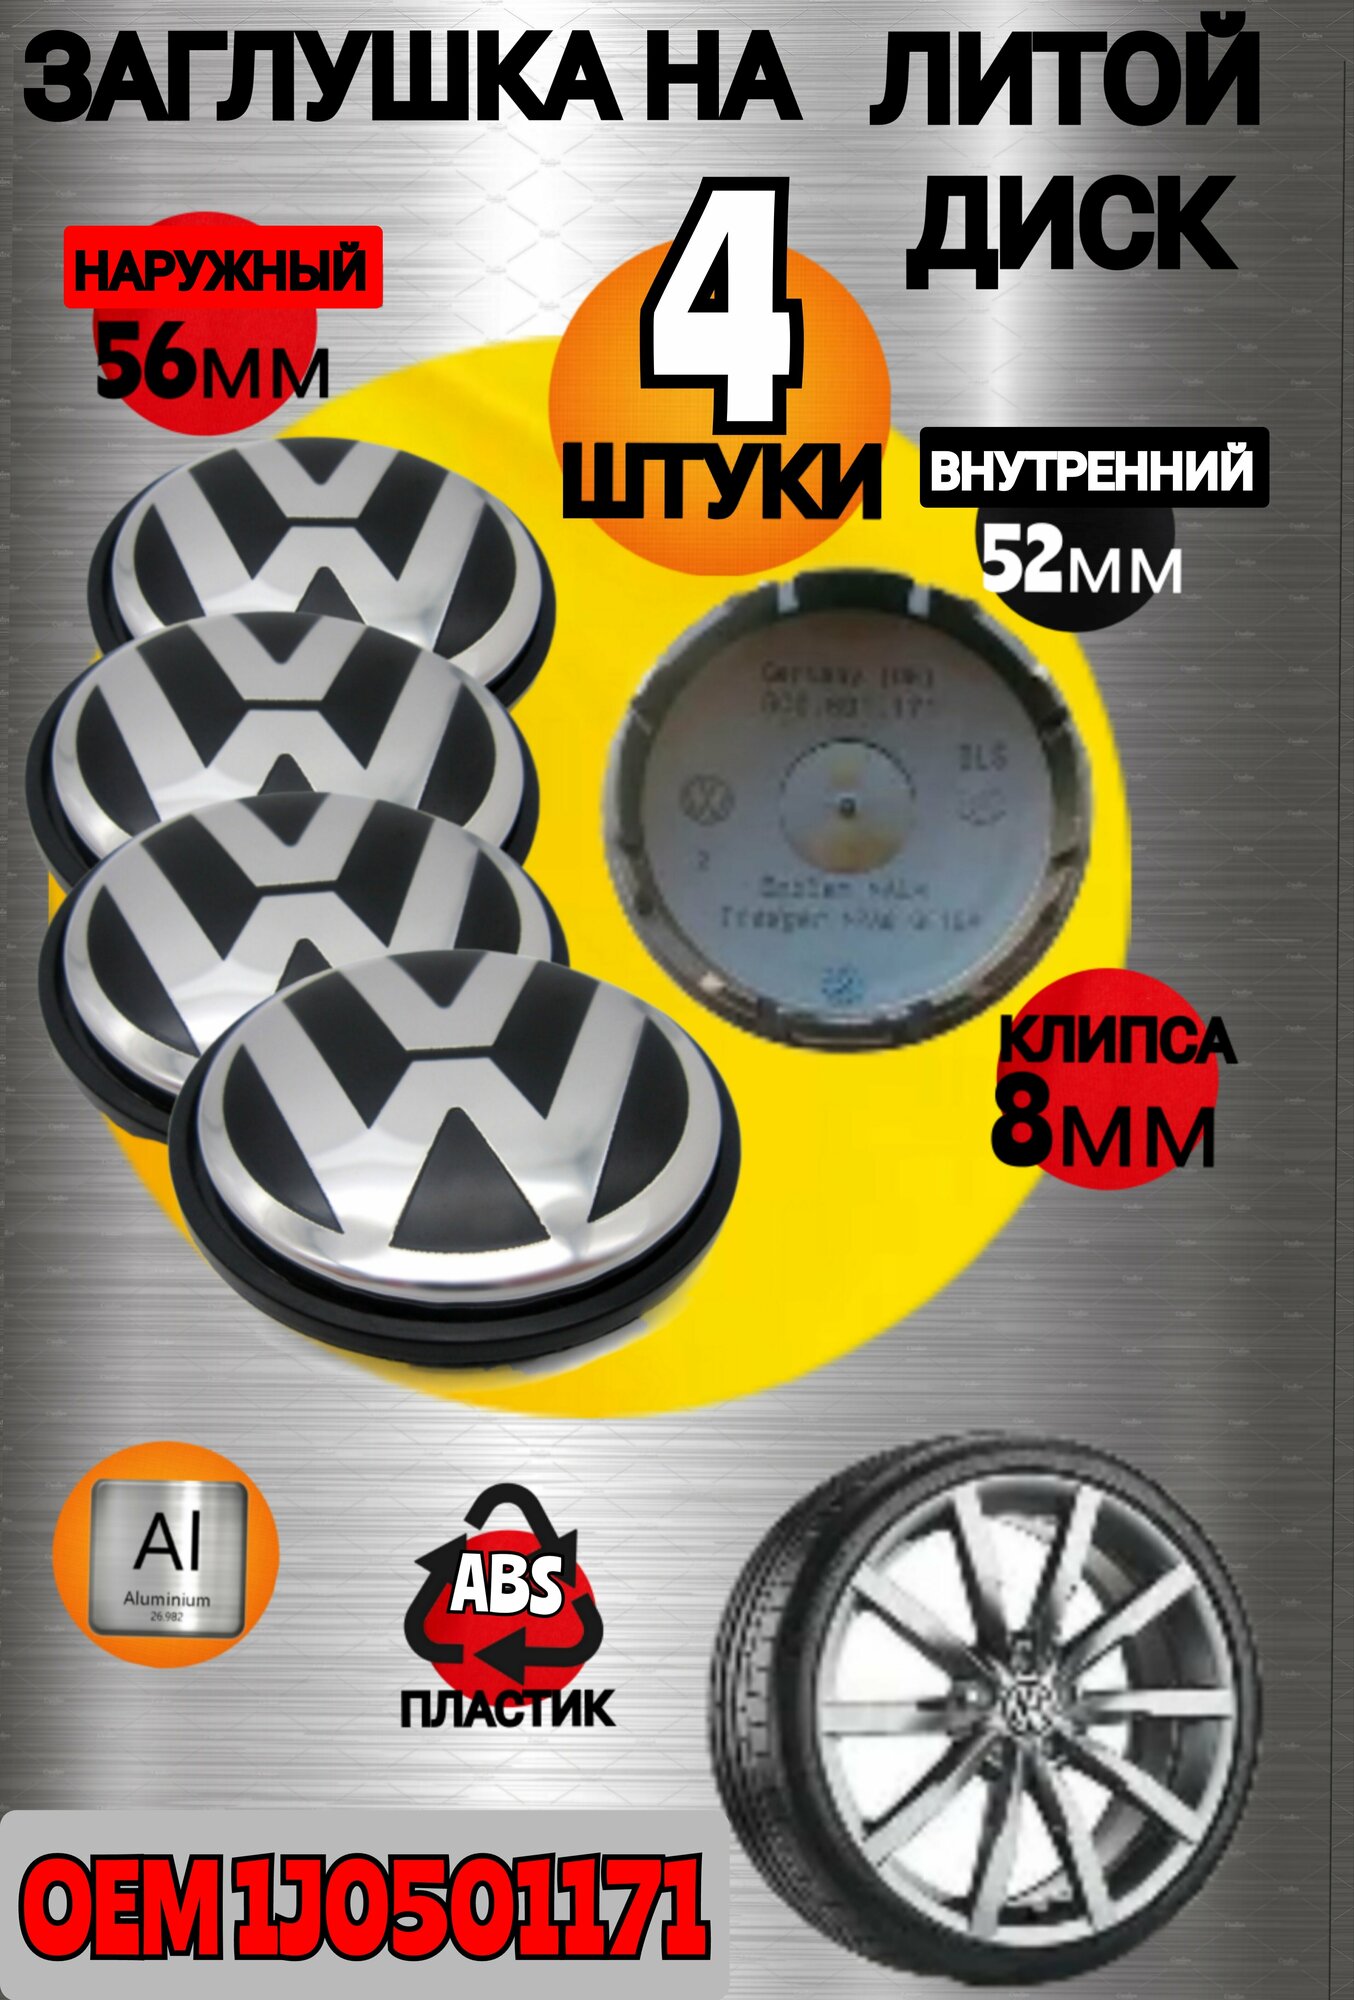 Заглушка диска/Колпачок ступицы литого диска Volkswagen Фольксваген 56-52 мм цвет черный , хром 4 штуки